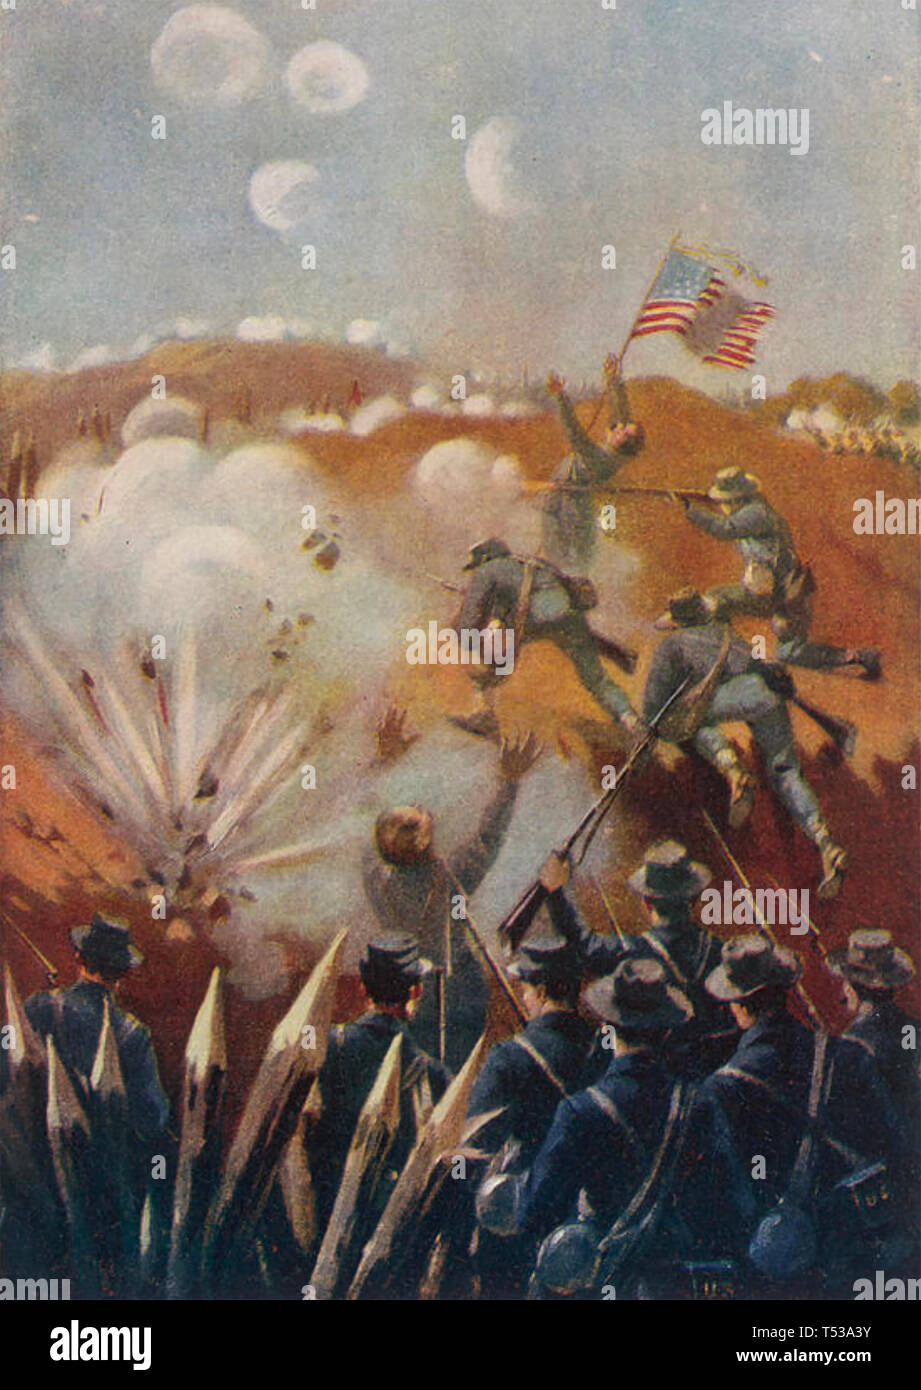 FRANKLIN-Nashville campaña de septiembre a diciembre de 1864, durante la Guerra Civil Americana. Tormenta de soldados de la unión de una serie de posiciones arraigadas Foto de stock